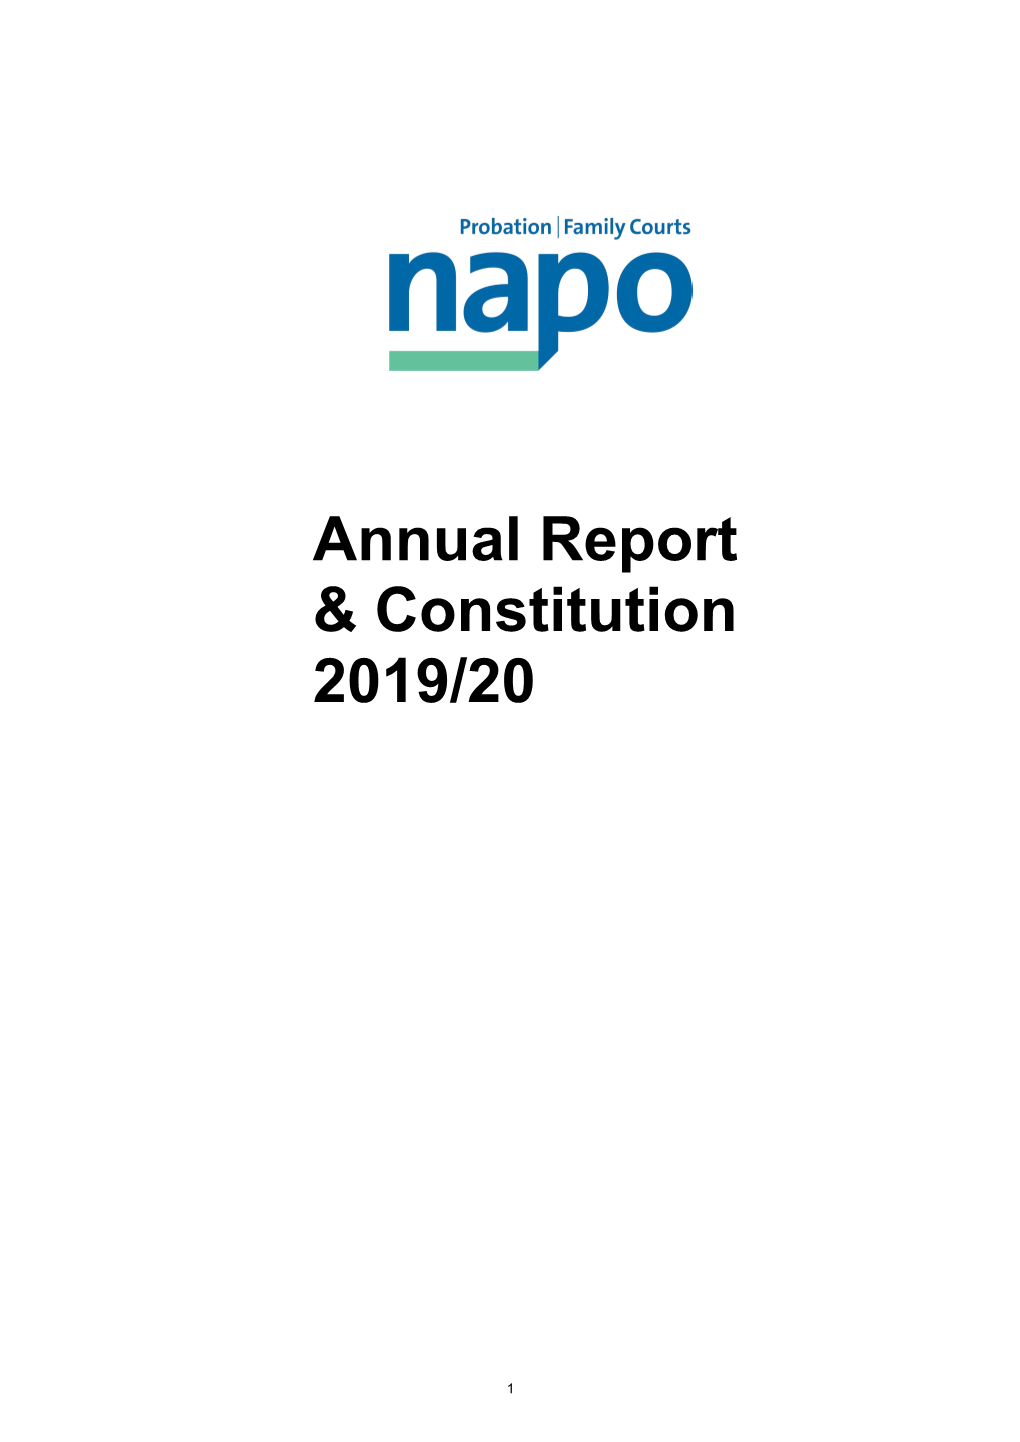 Annual Report & Constitution 2019/20